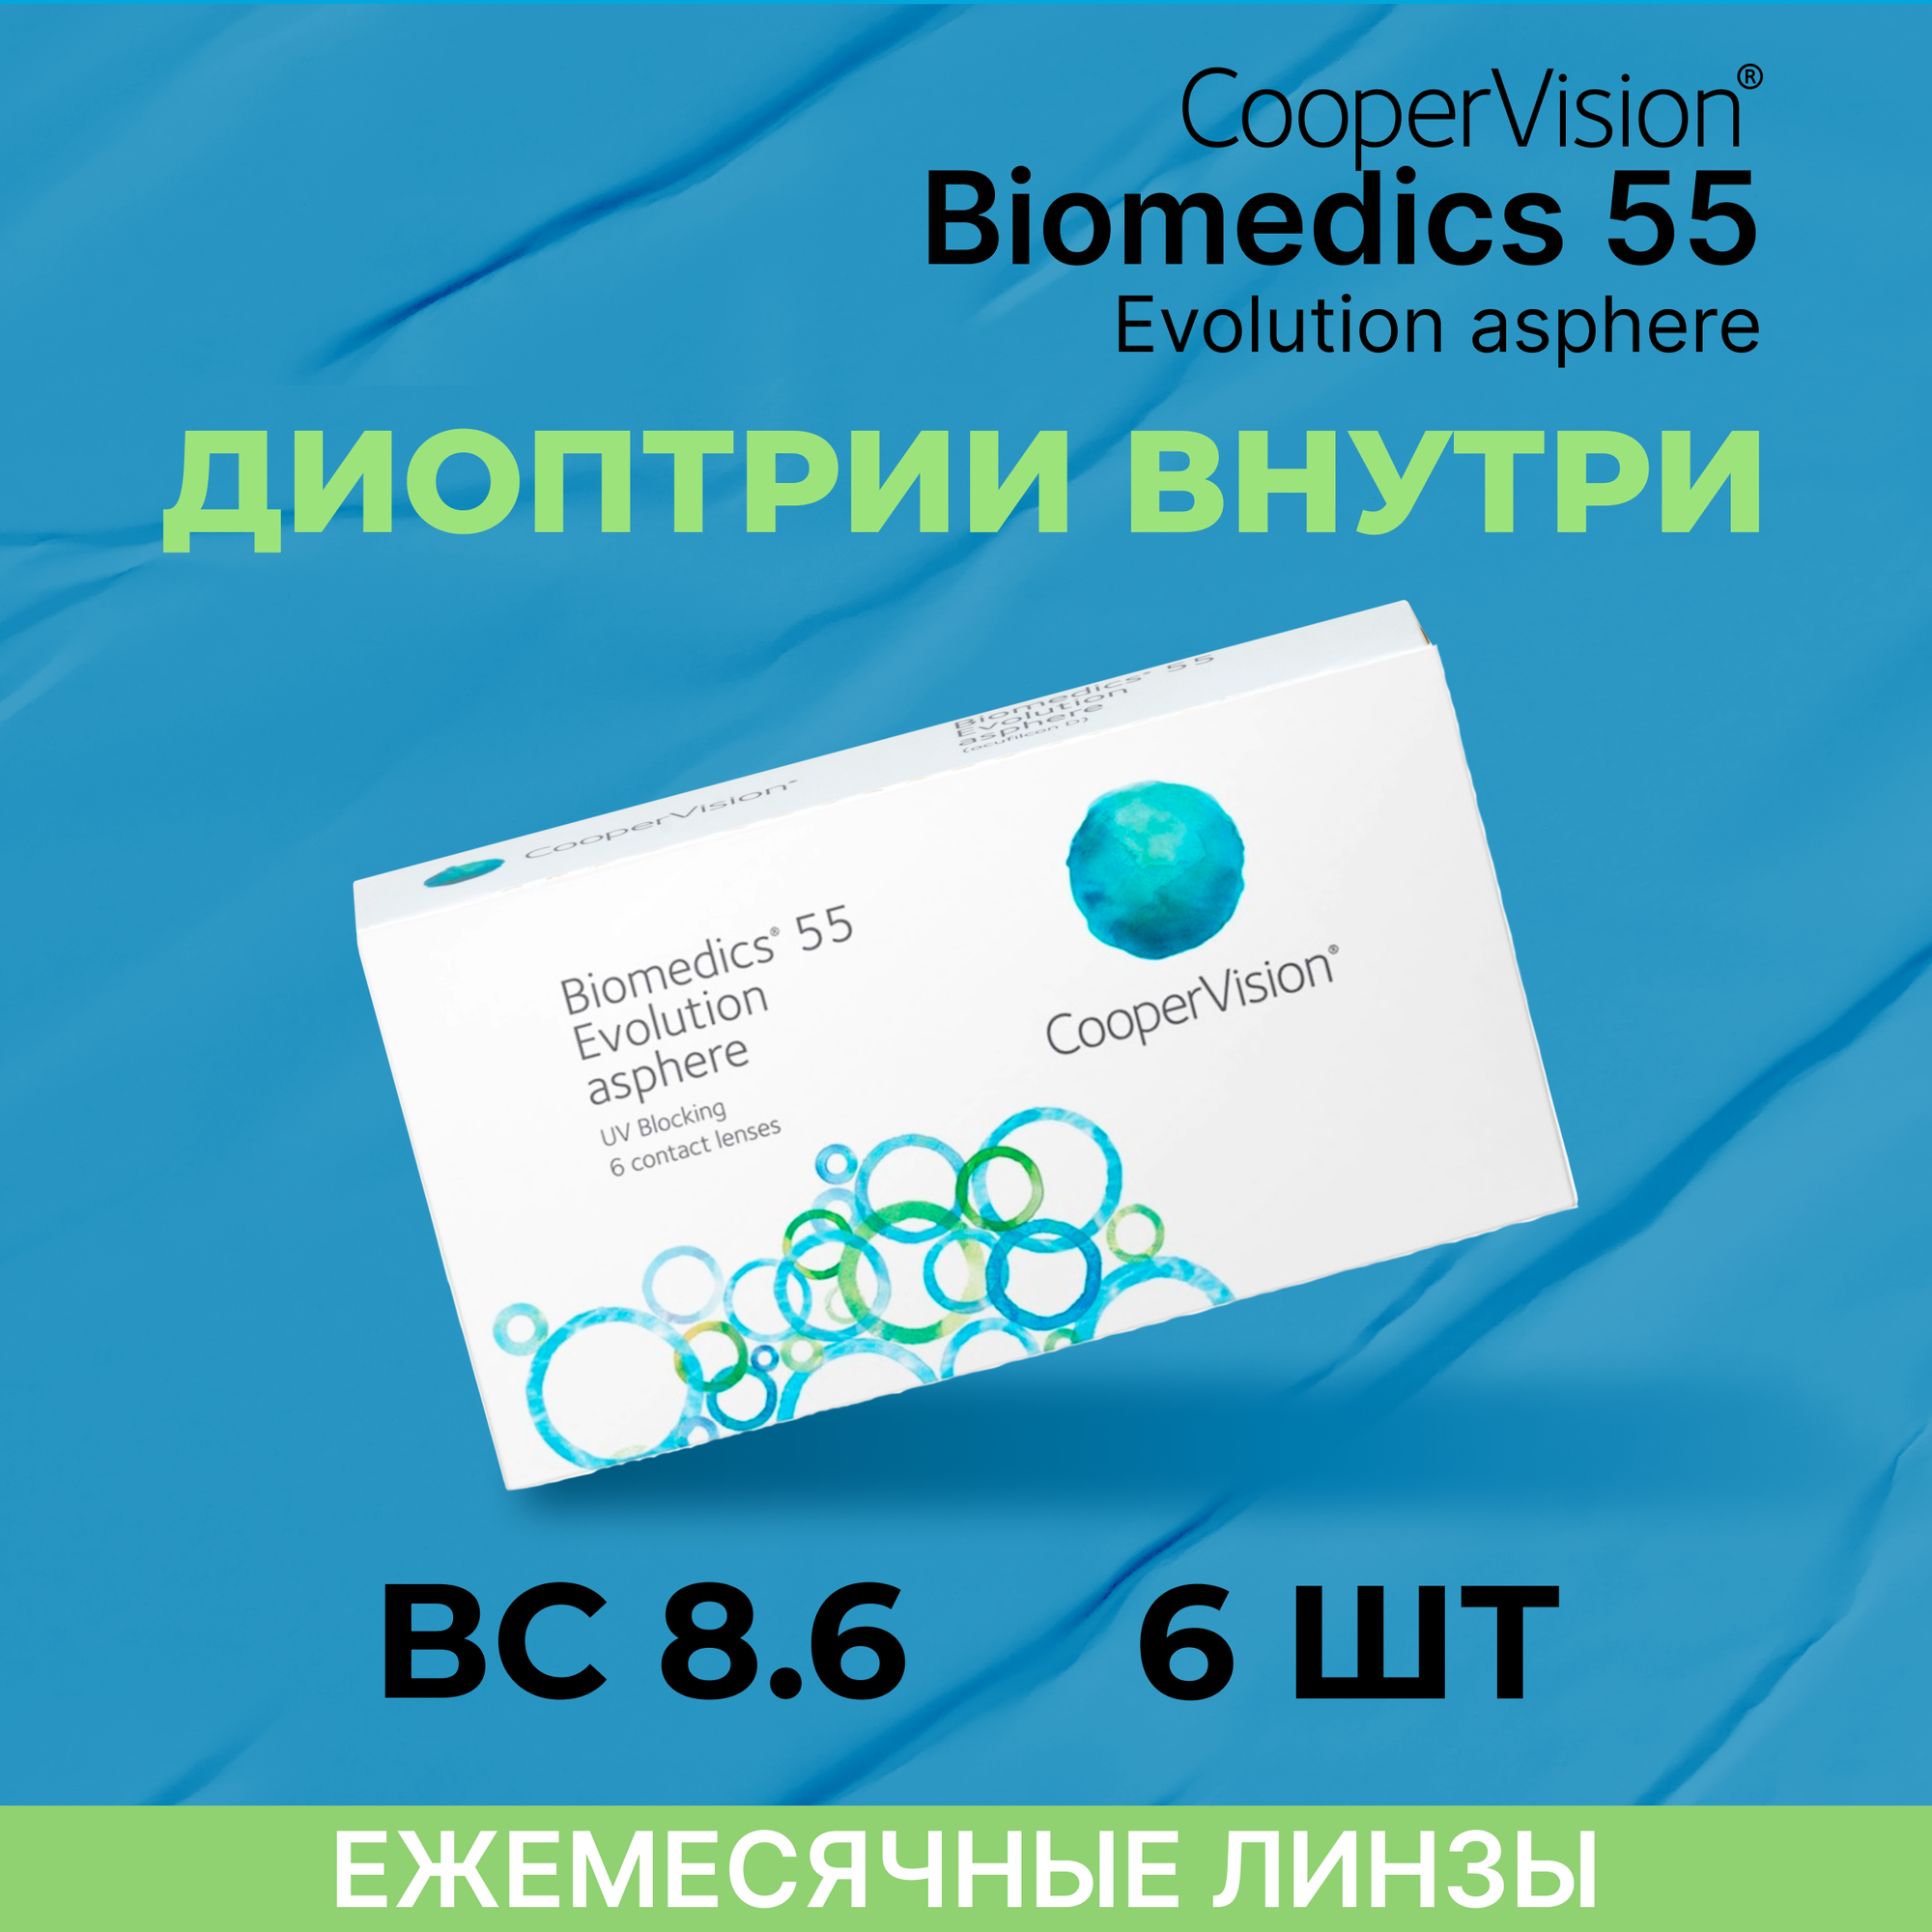 Контактные линзы CooperVision Biomedics 55 Evolution Asphere (6 линз) -3.00 R 8.9, ежемесячные, прозрачные